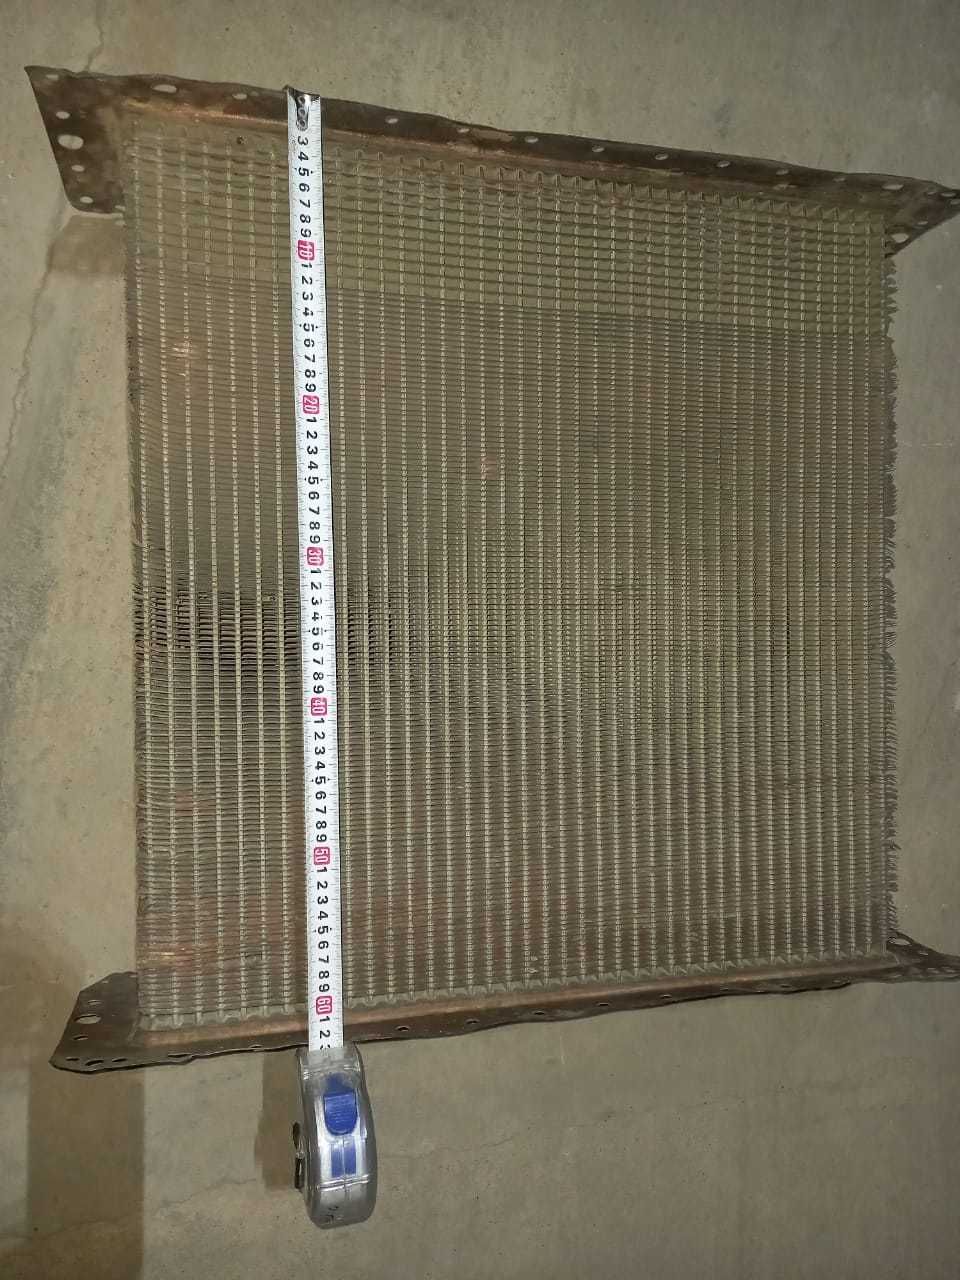 Продам 3-х рядный сердцевина радиатор от ДТ-75МВ, ДТ-75Д, ДТ-75 МЛ